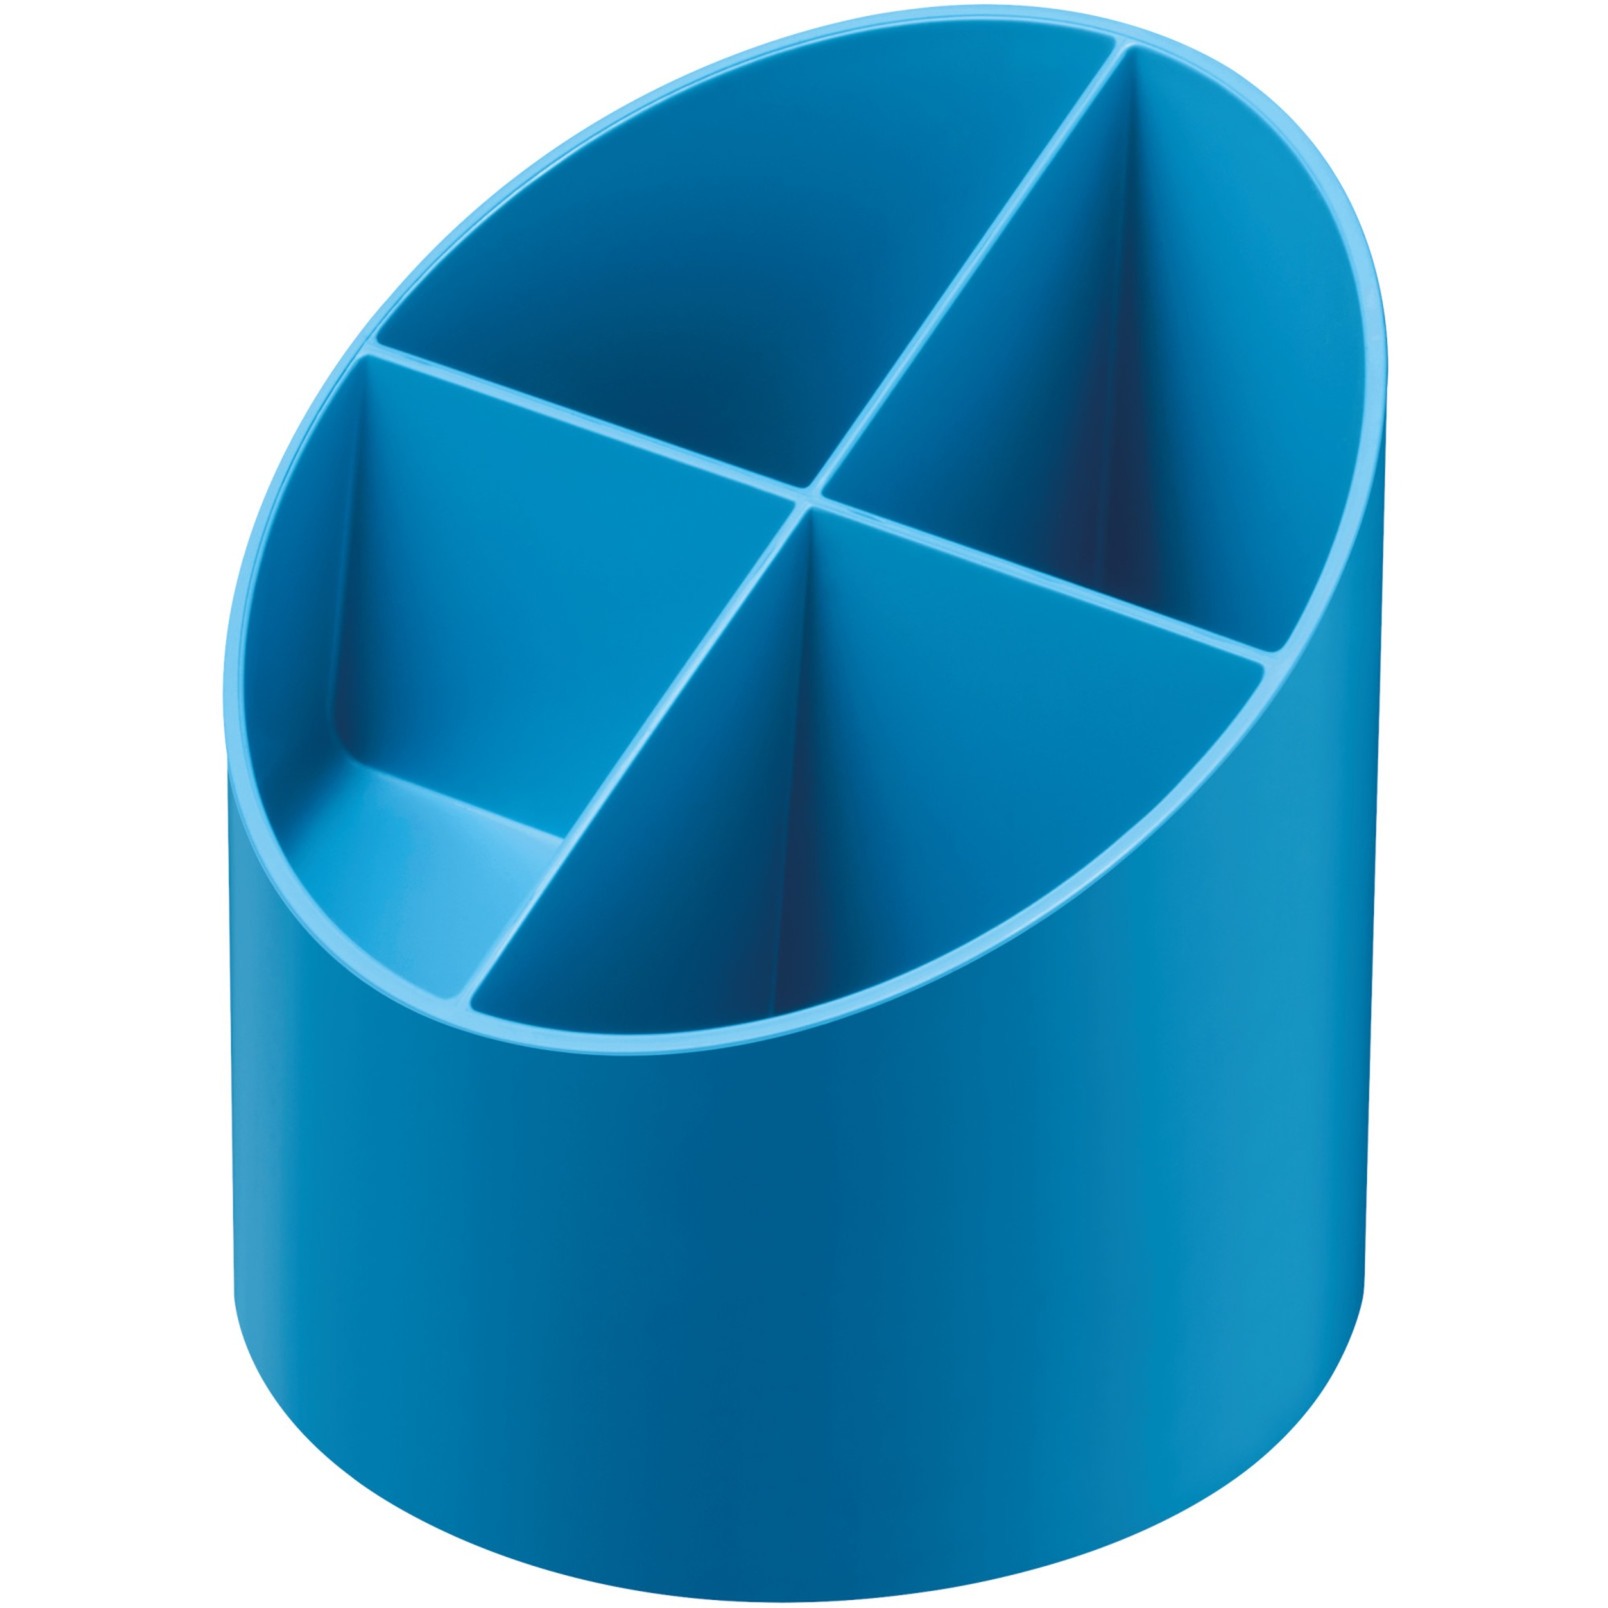 Image of Alternate - Köcher rund intensiv blau, Aufbewahrung online einkaufen bei Alternate